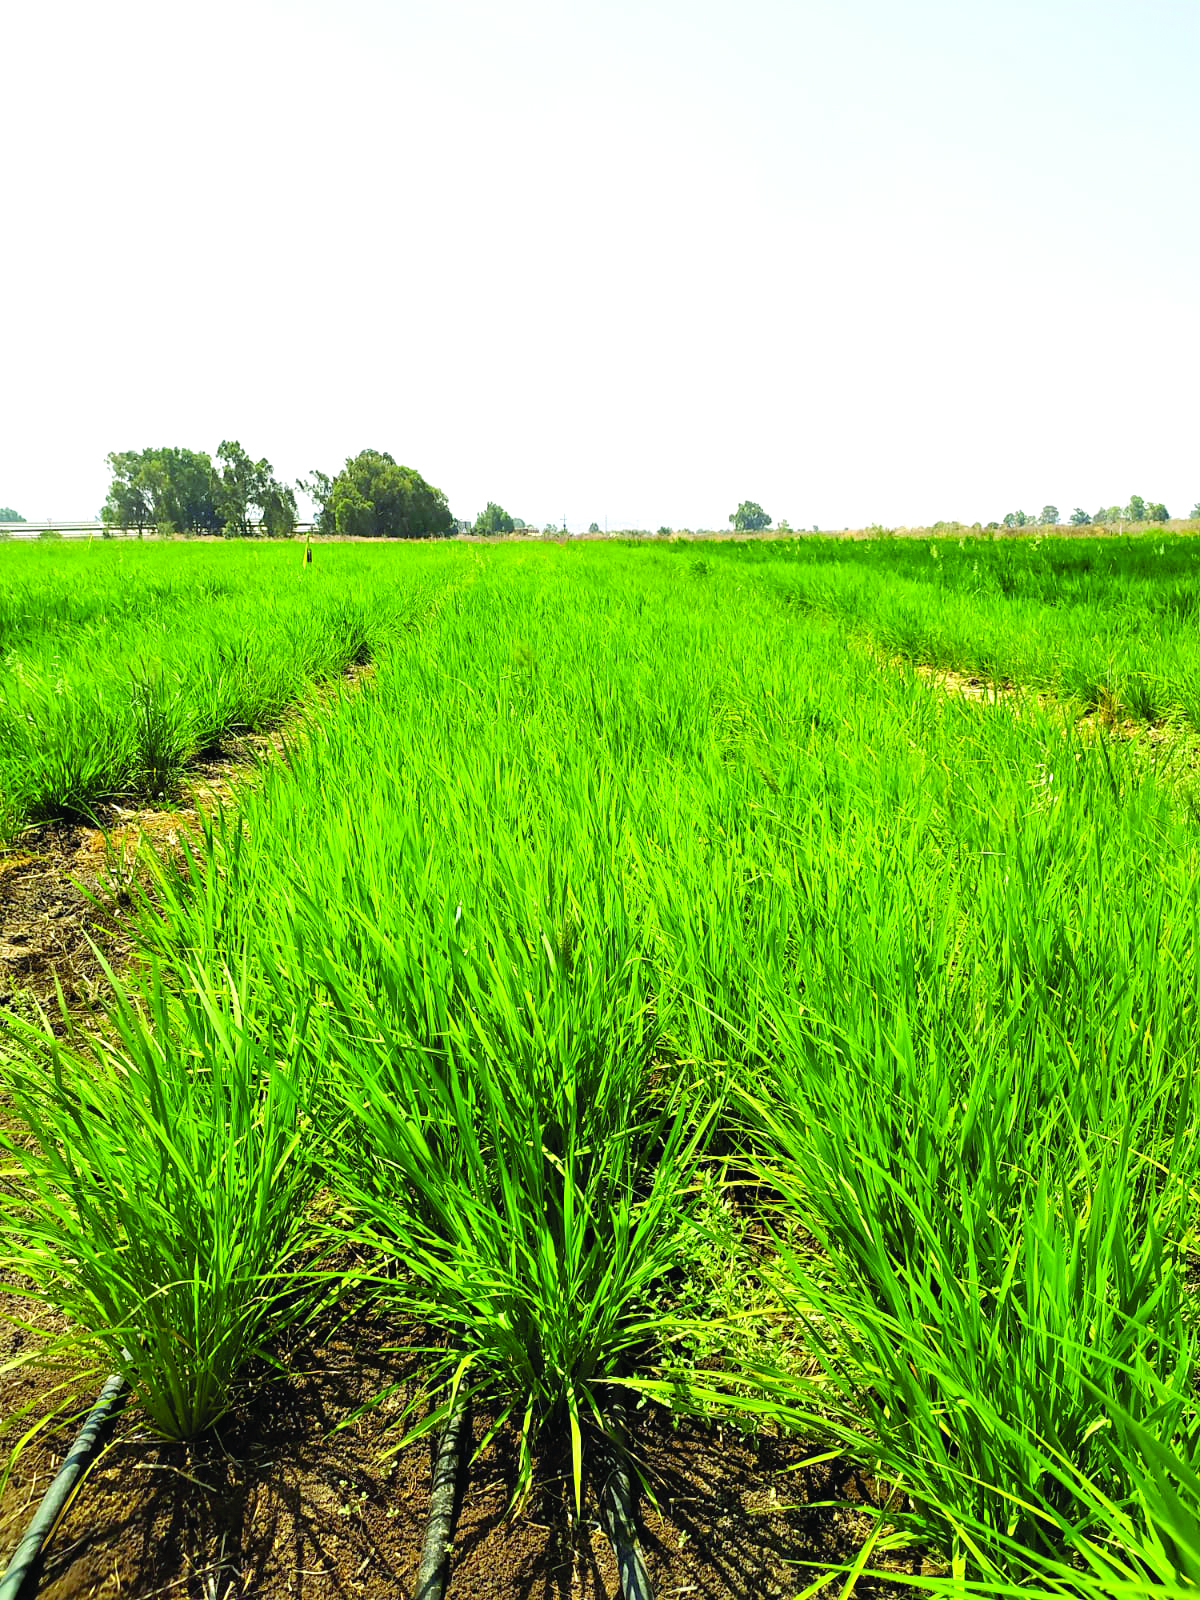 שדה האורז של ירמי ועמית במיצר